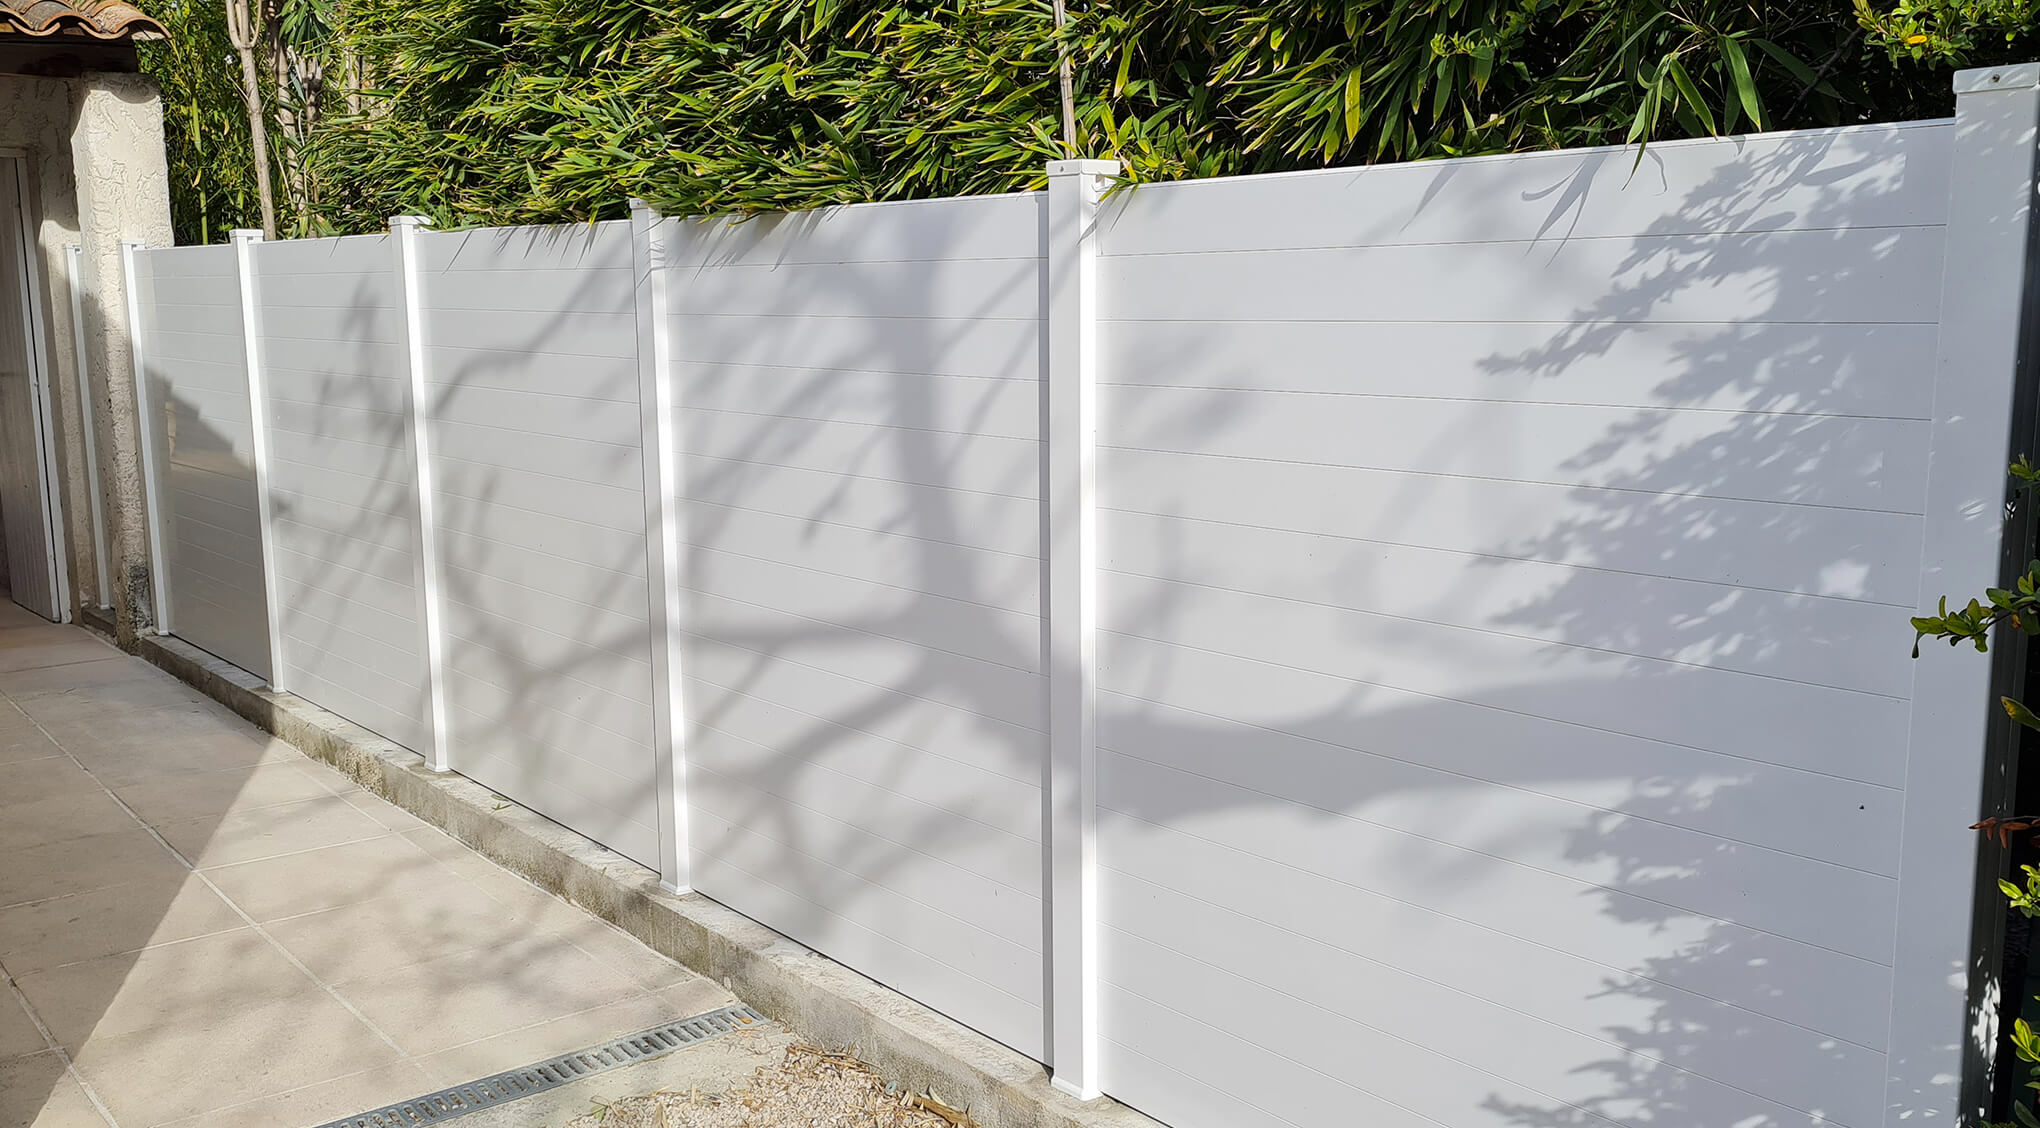 Clôture PVC blanc pas chère : clôture brise vue Initiale